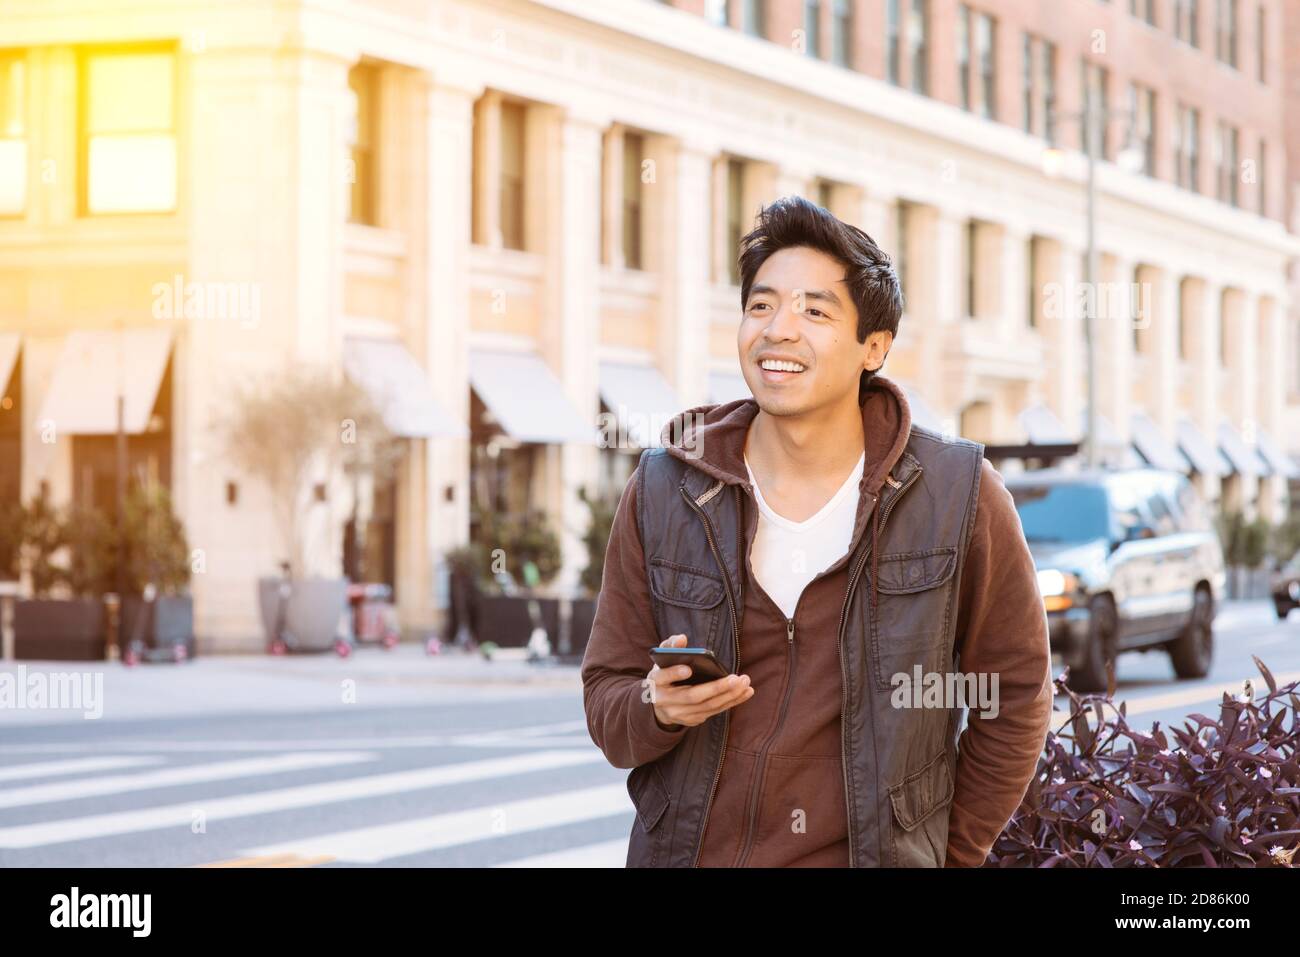 Asiatisch männlich lächelt und ist glücklich warten auf seine Fahrt Teilen, während er sein Smartphone hält - App-basierter Transport - Stadt - Tagsüber Stockfoto